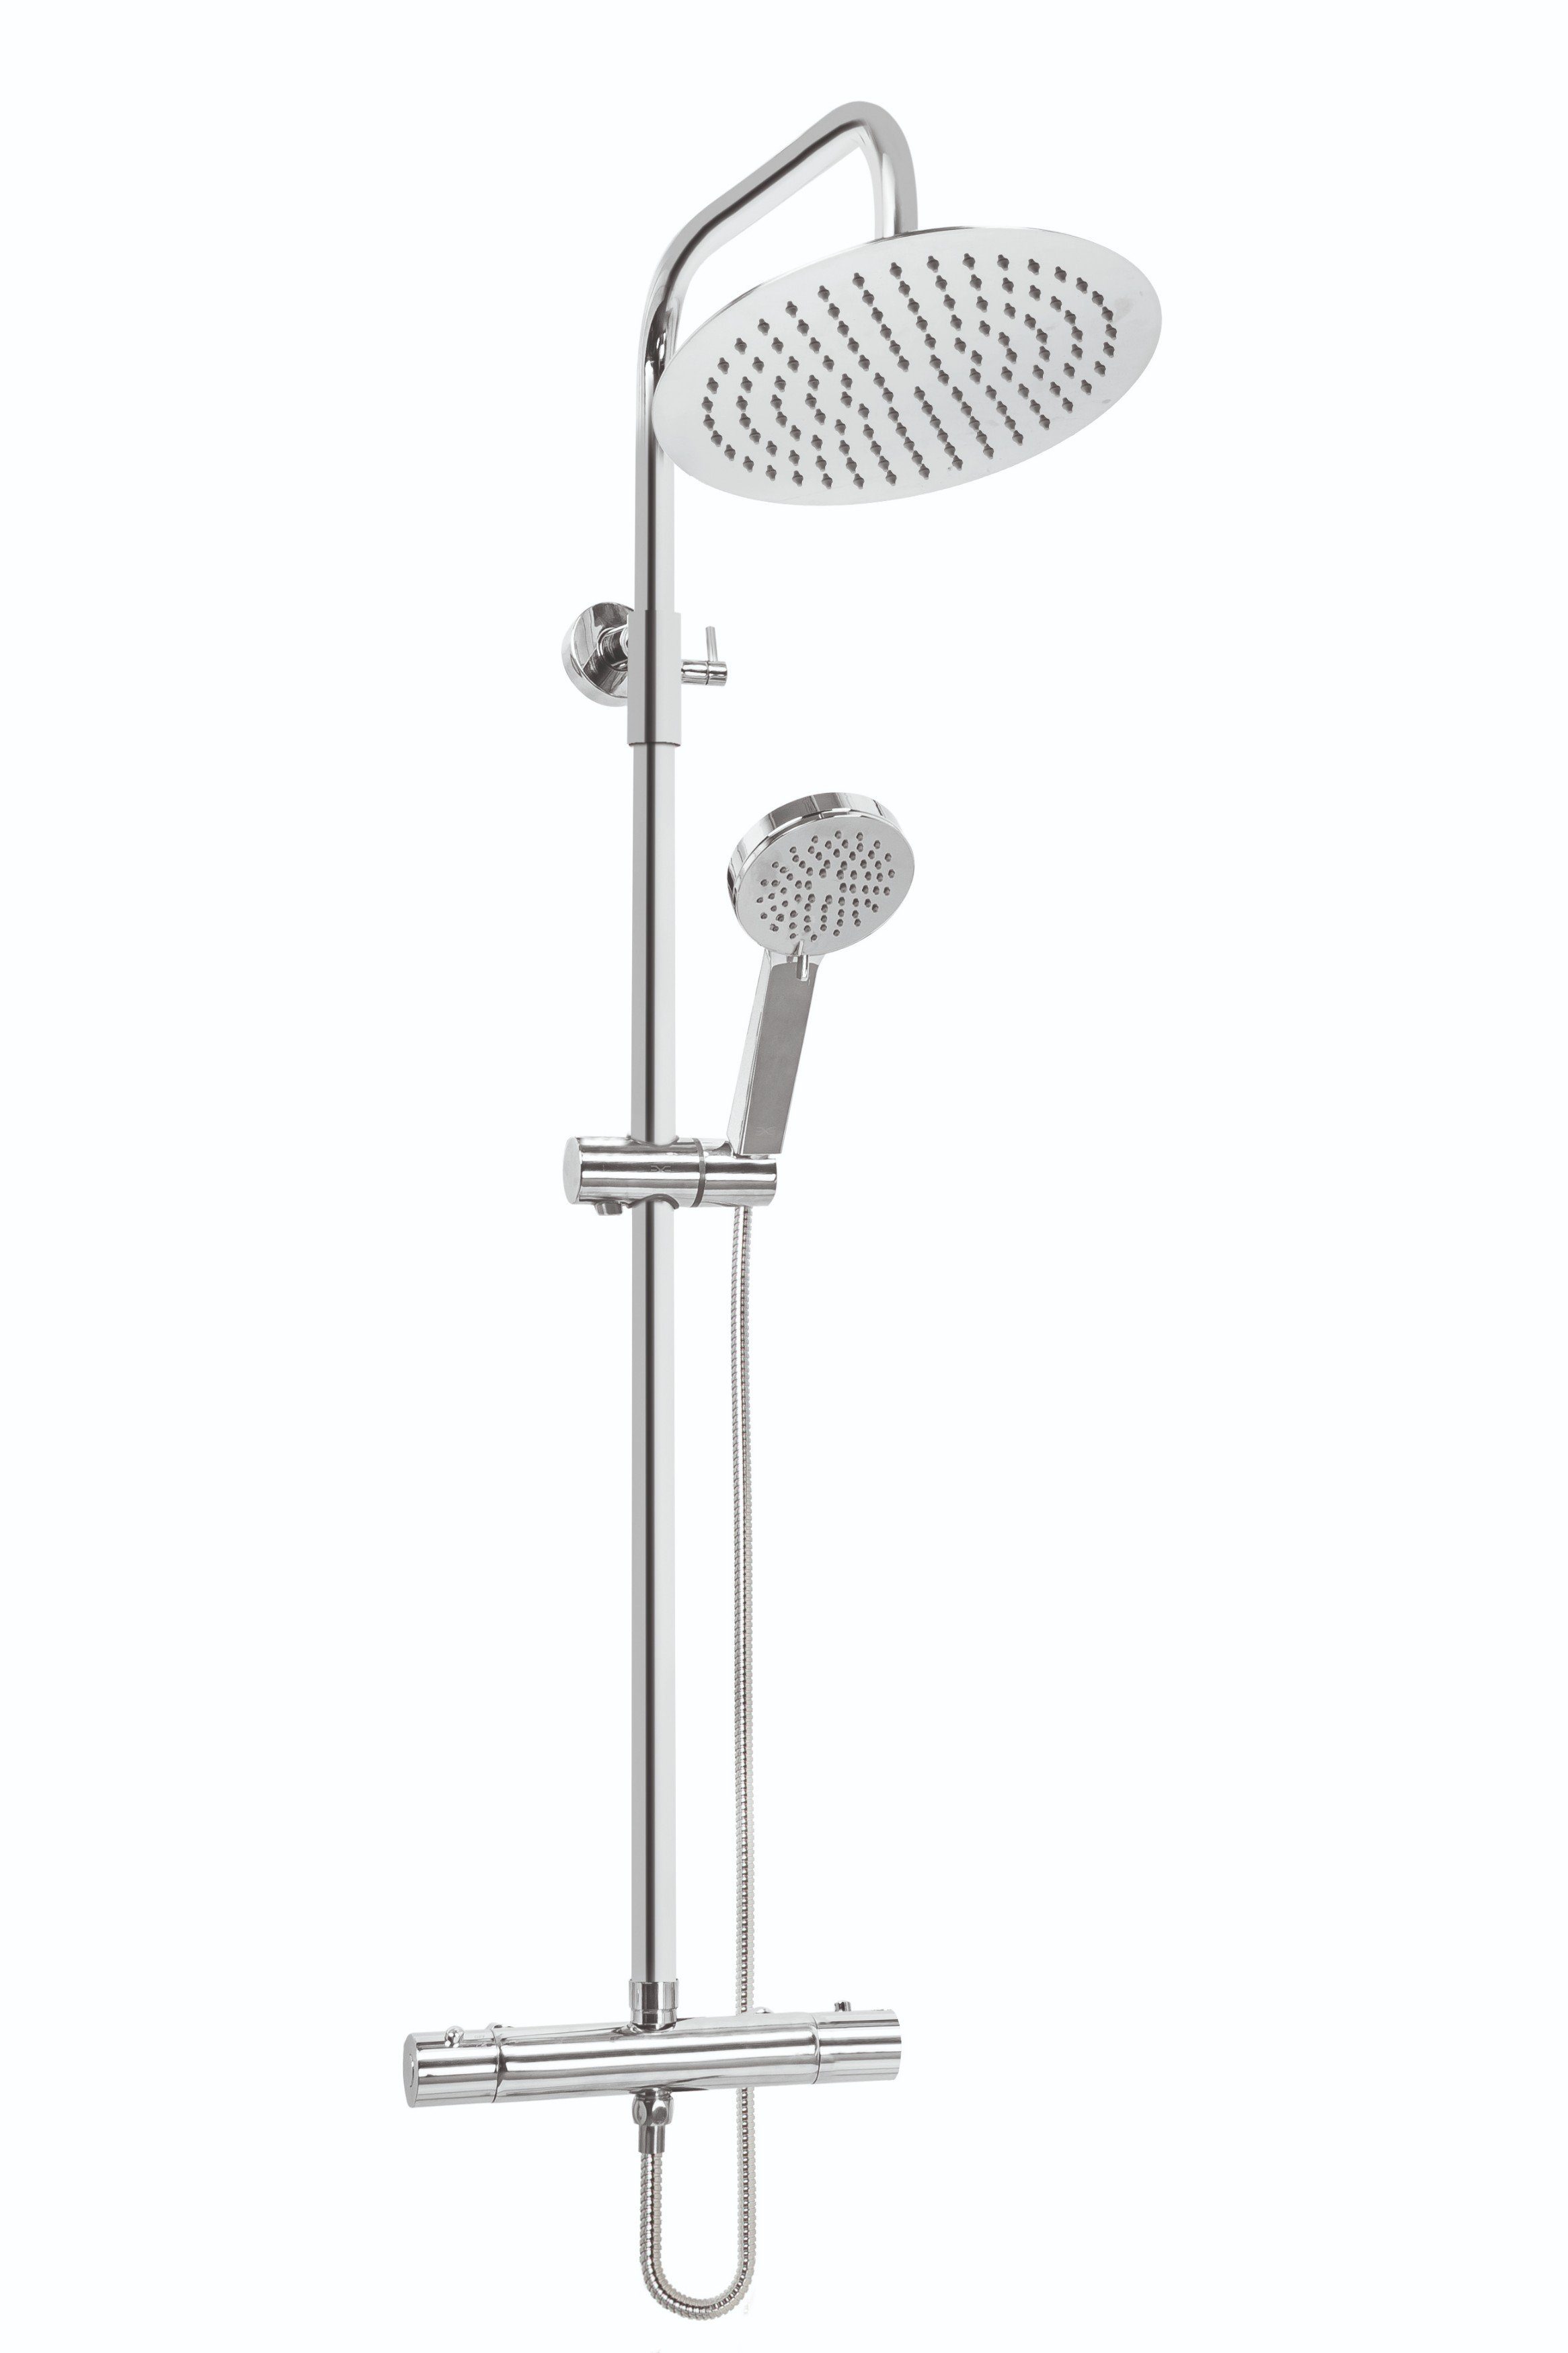 KOLMAN Duschsystem IMOLA Brausegarnitur Regendusche mit Thermostat  Mischbatterie, Höhe 118 cm, 3 Strahlart(en), in Silber